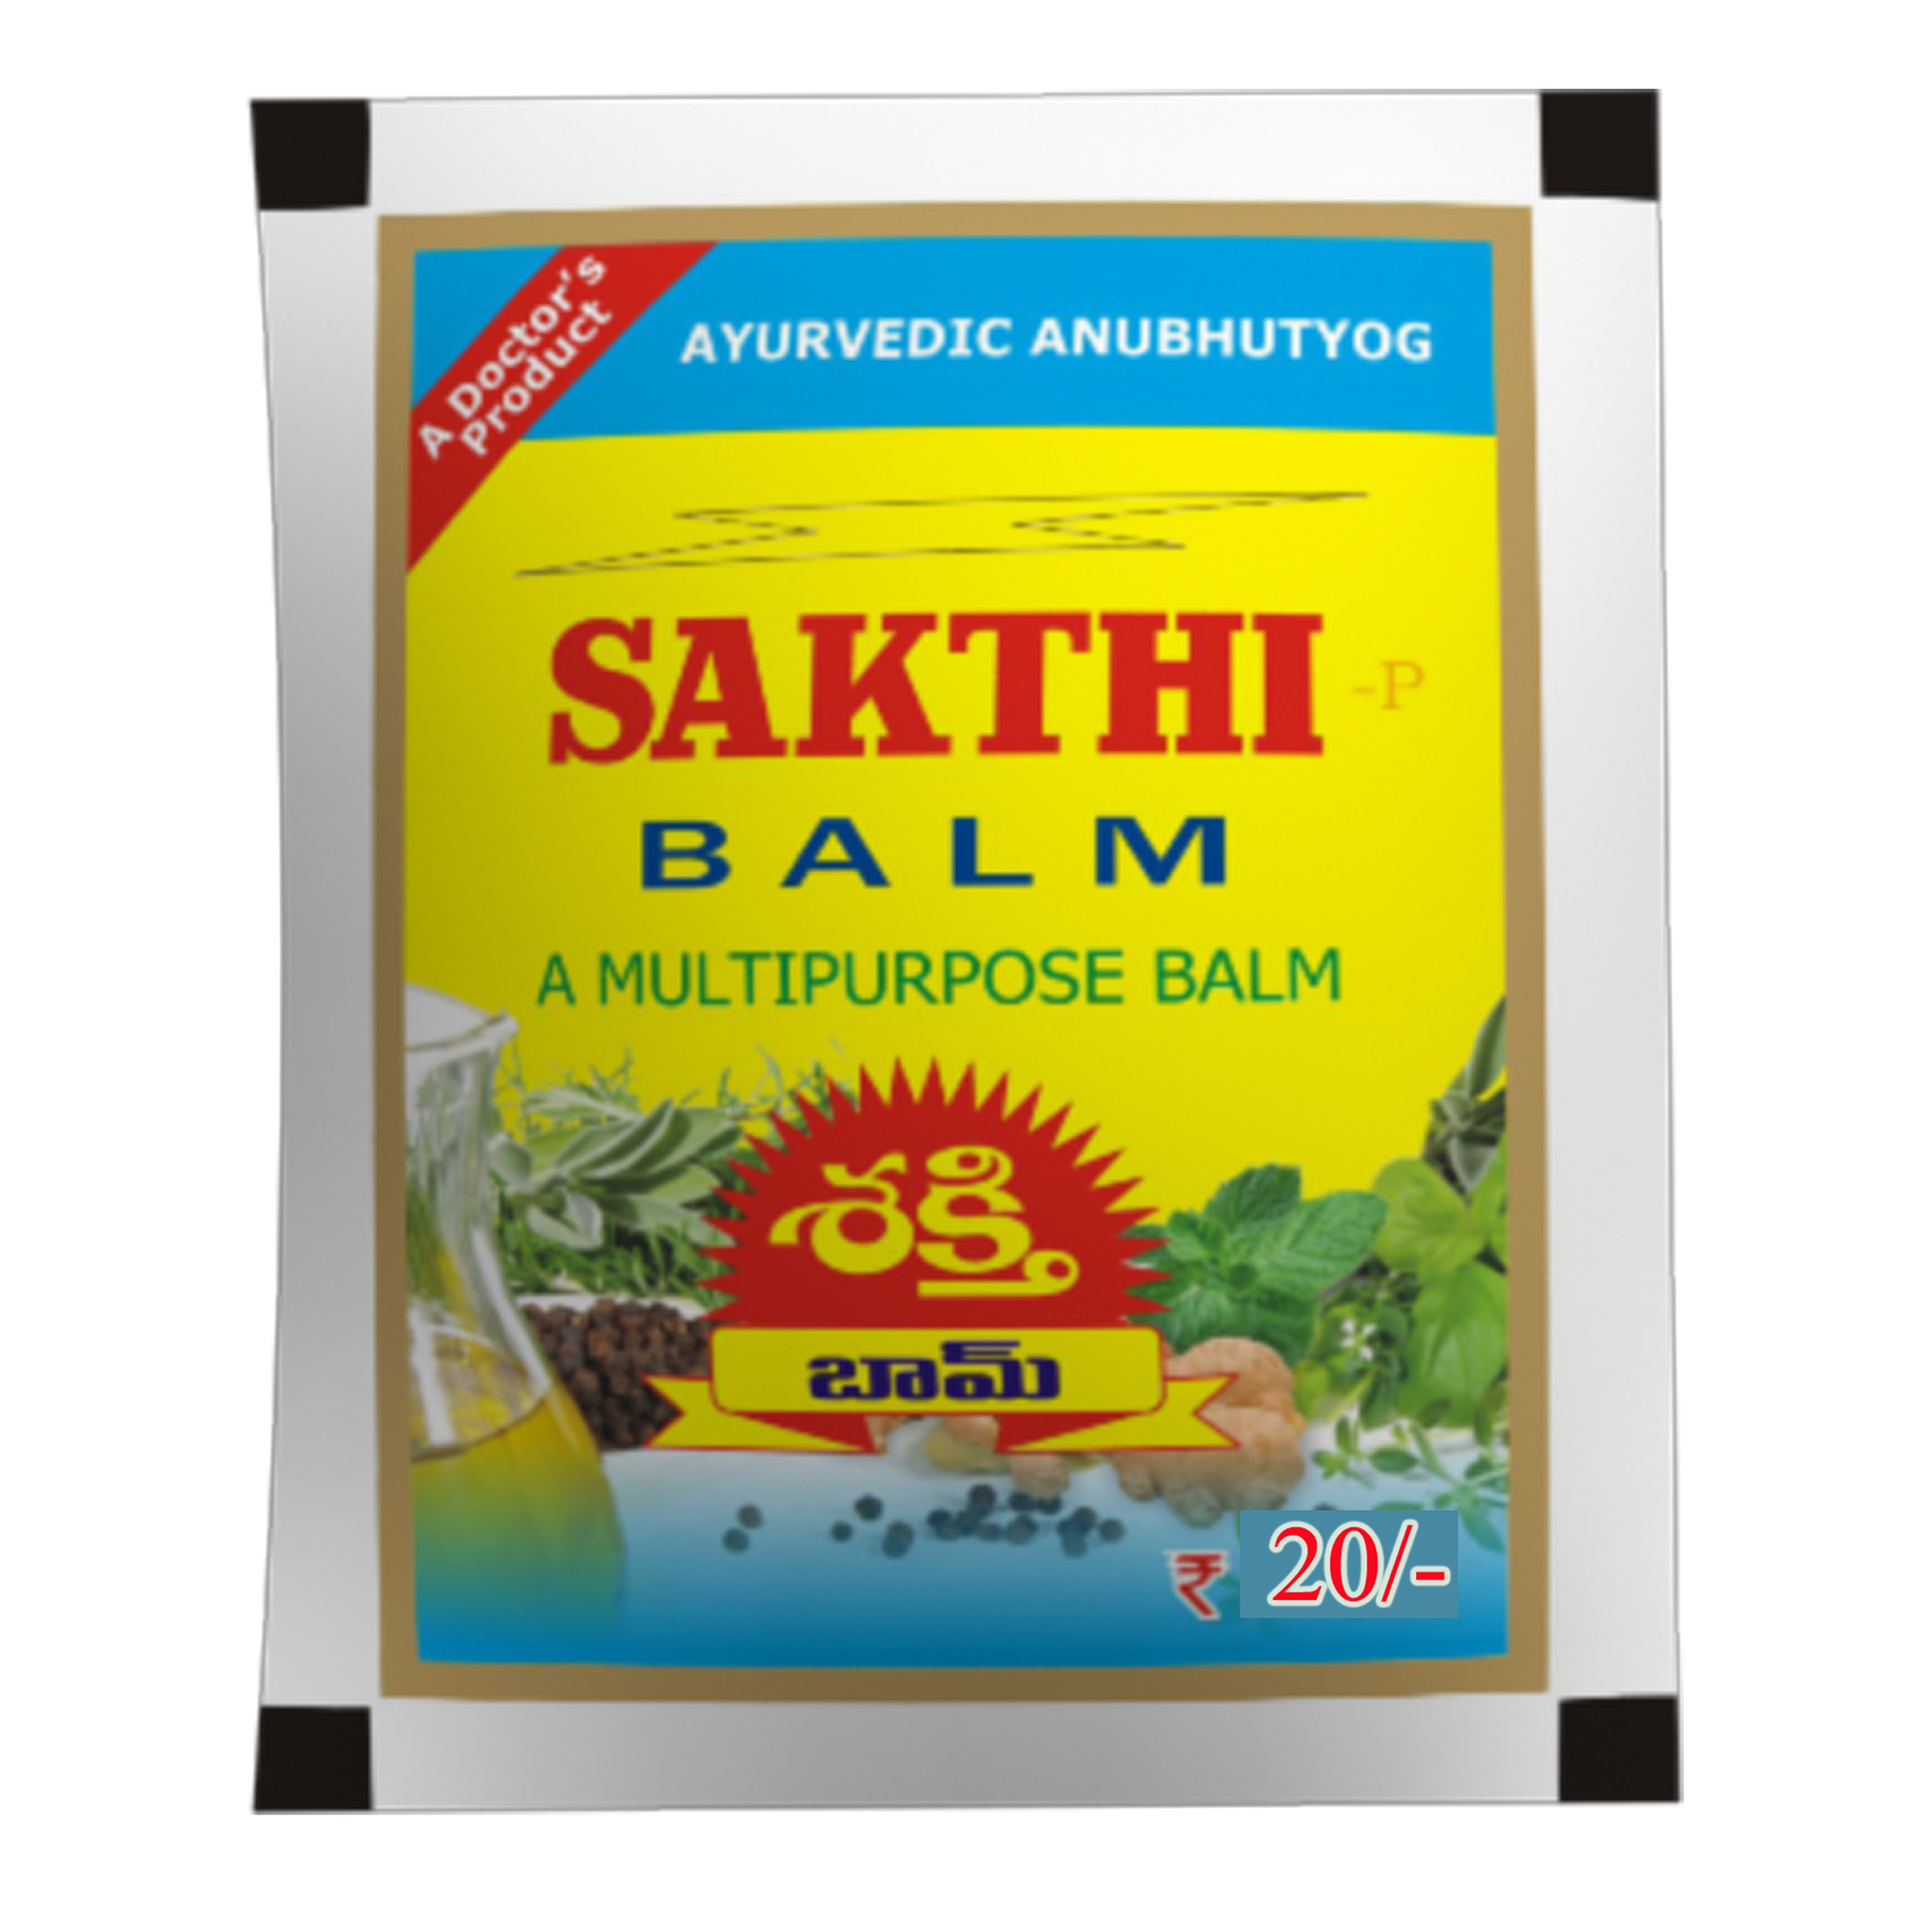 Sakthi Balm